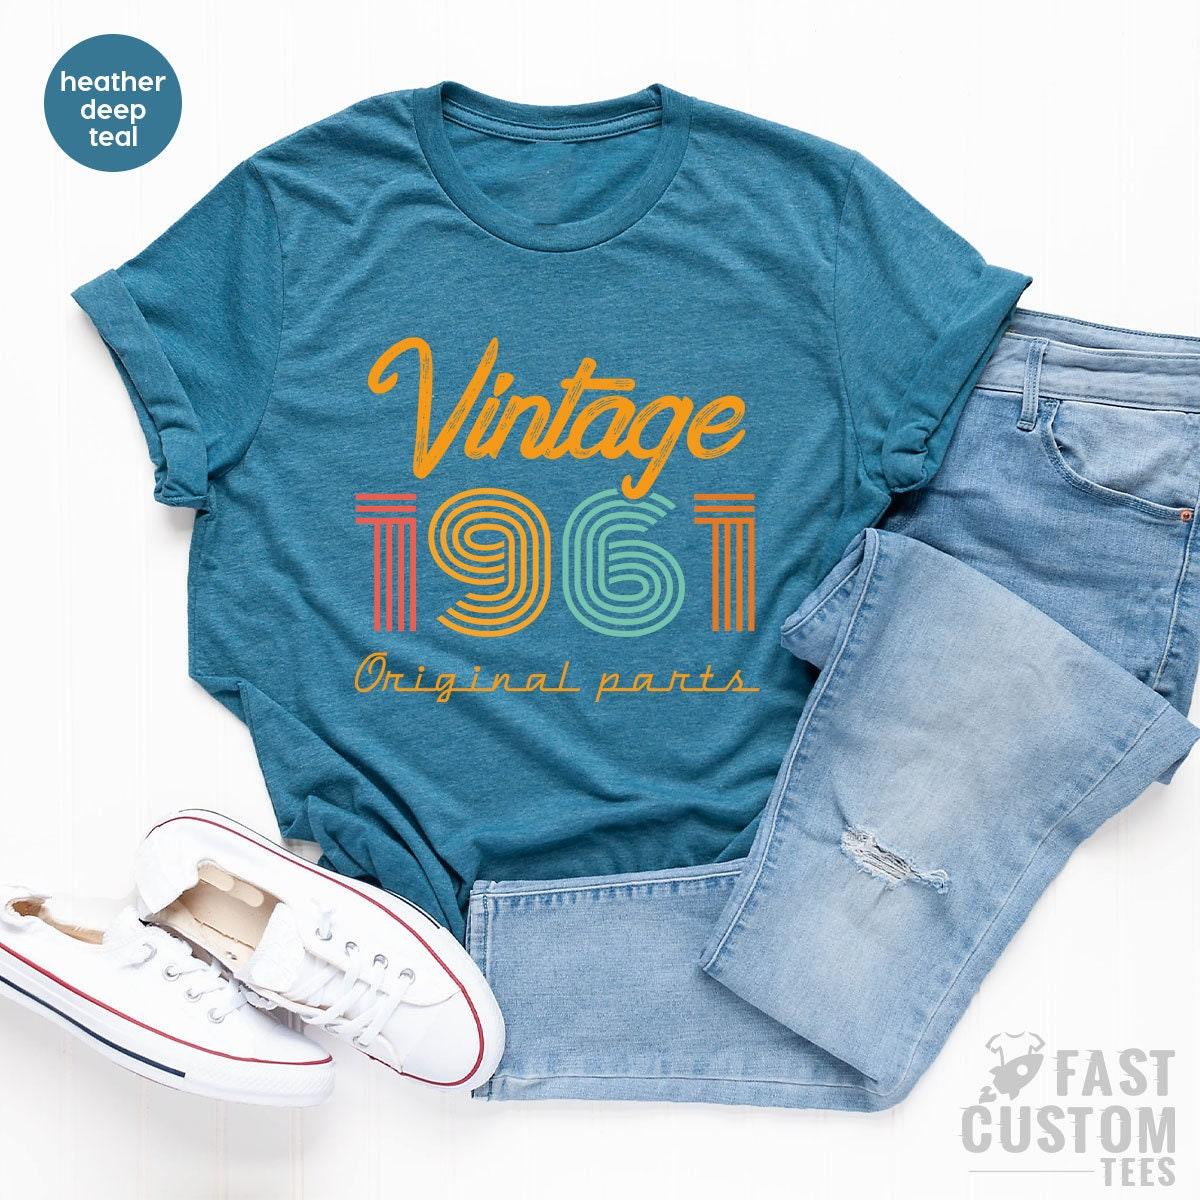 60th Birthday Shirt, Vintage T Shirt, Vintage 1961 Shirt, 60th Birthday Gift For Women, 60th Birthday Shirt Men, Retro Shirt, Vintage Shirts - Fastdeliverytees.com